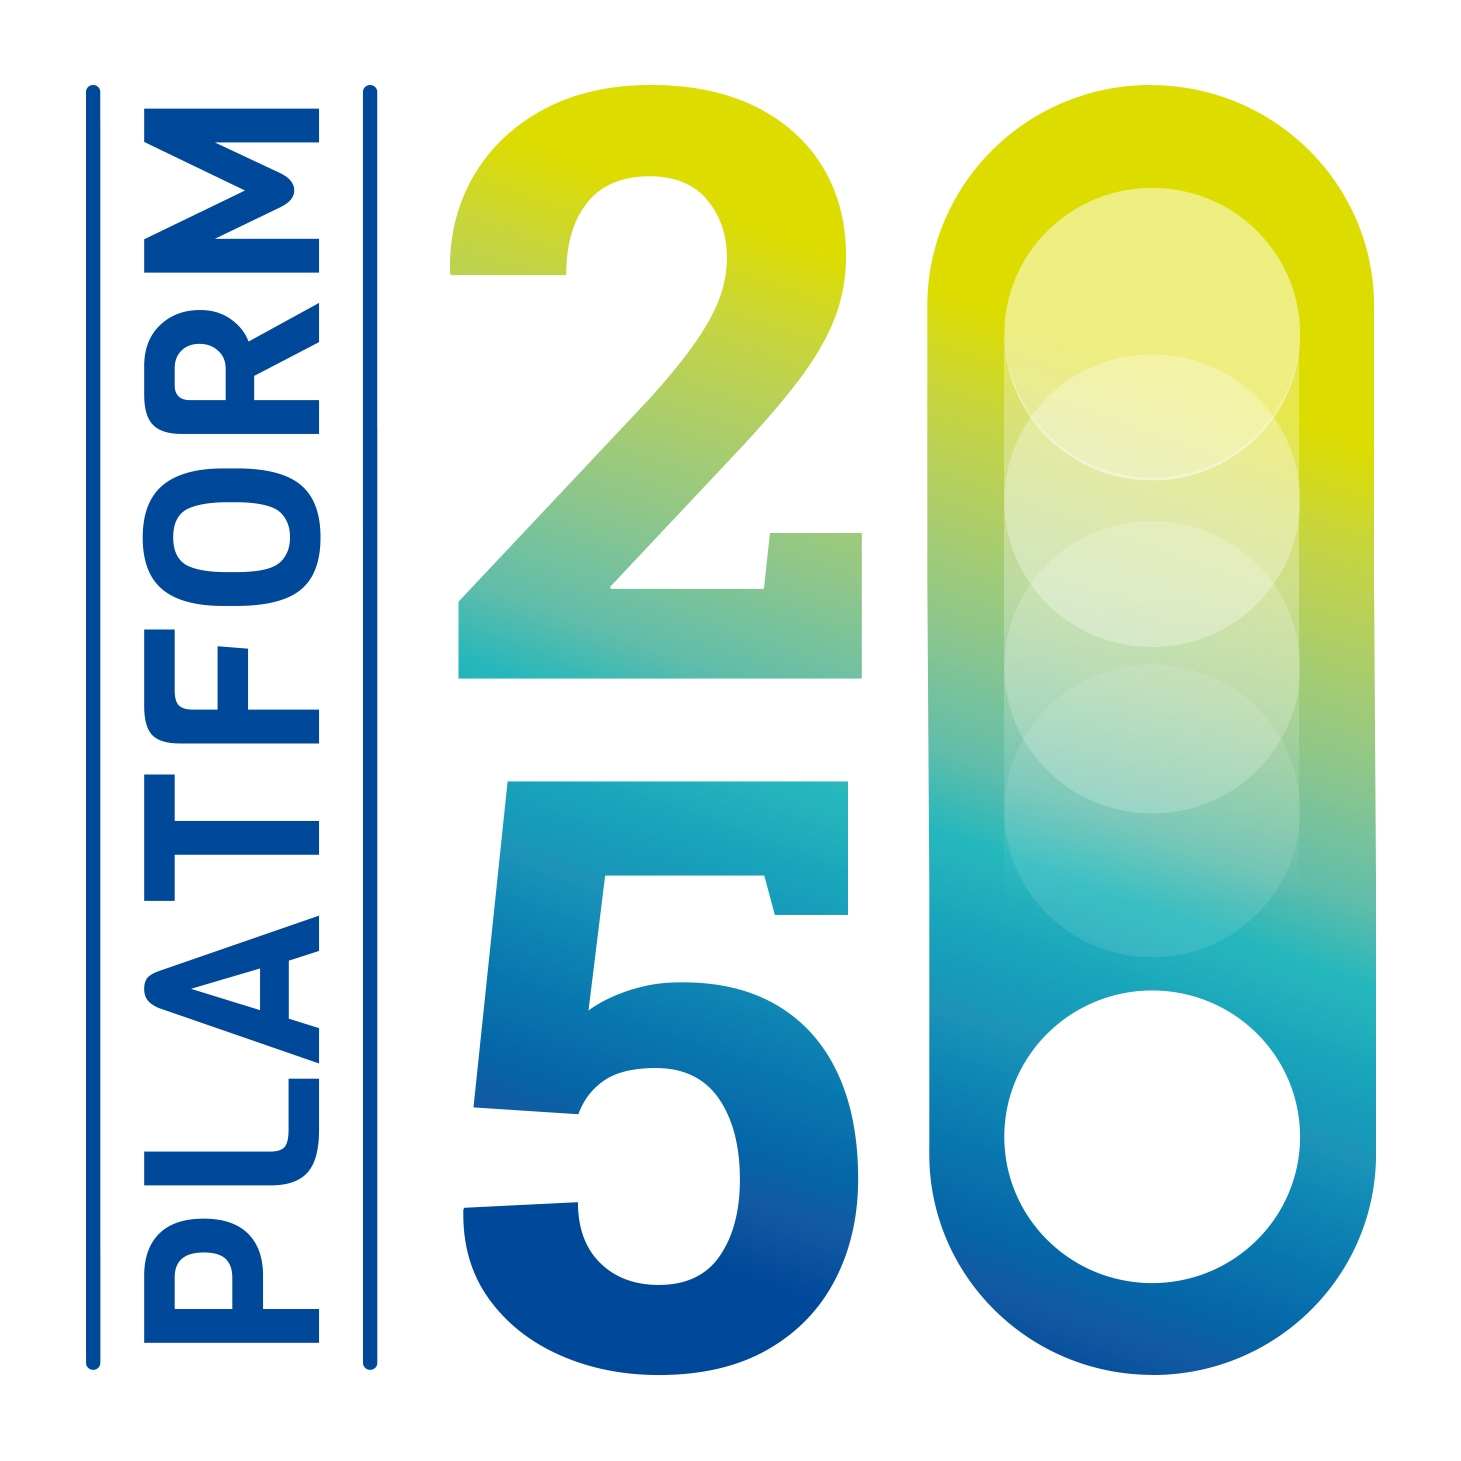 Platform2050